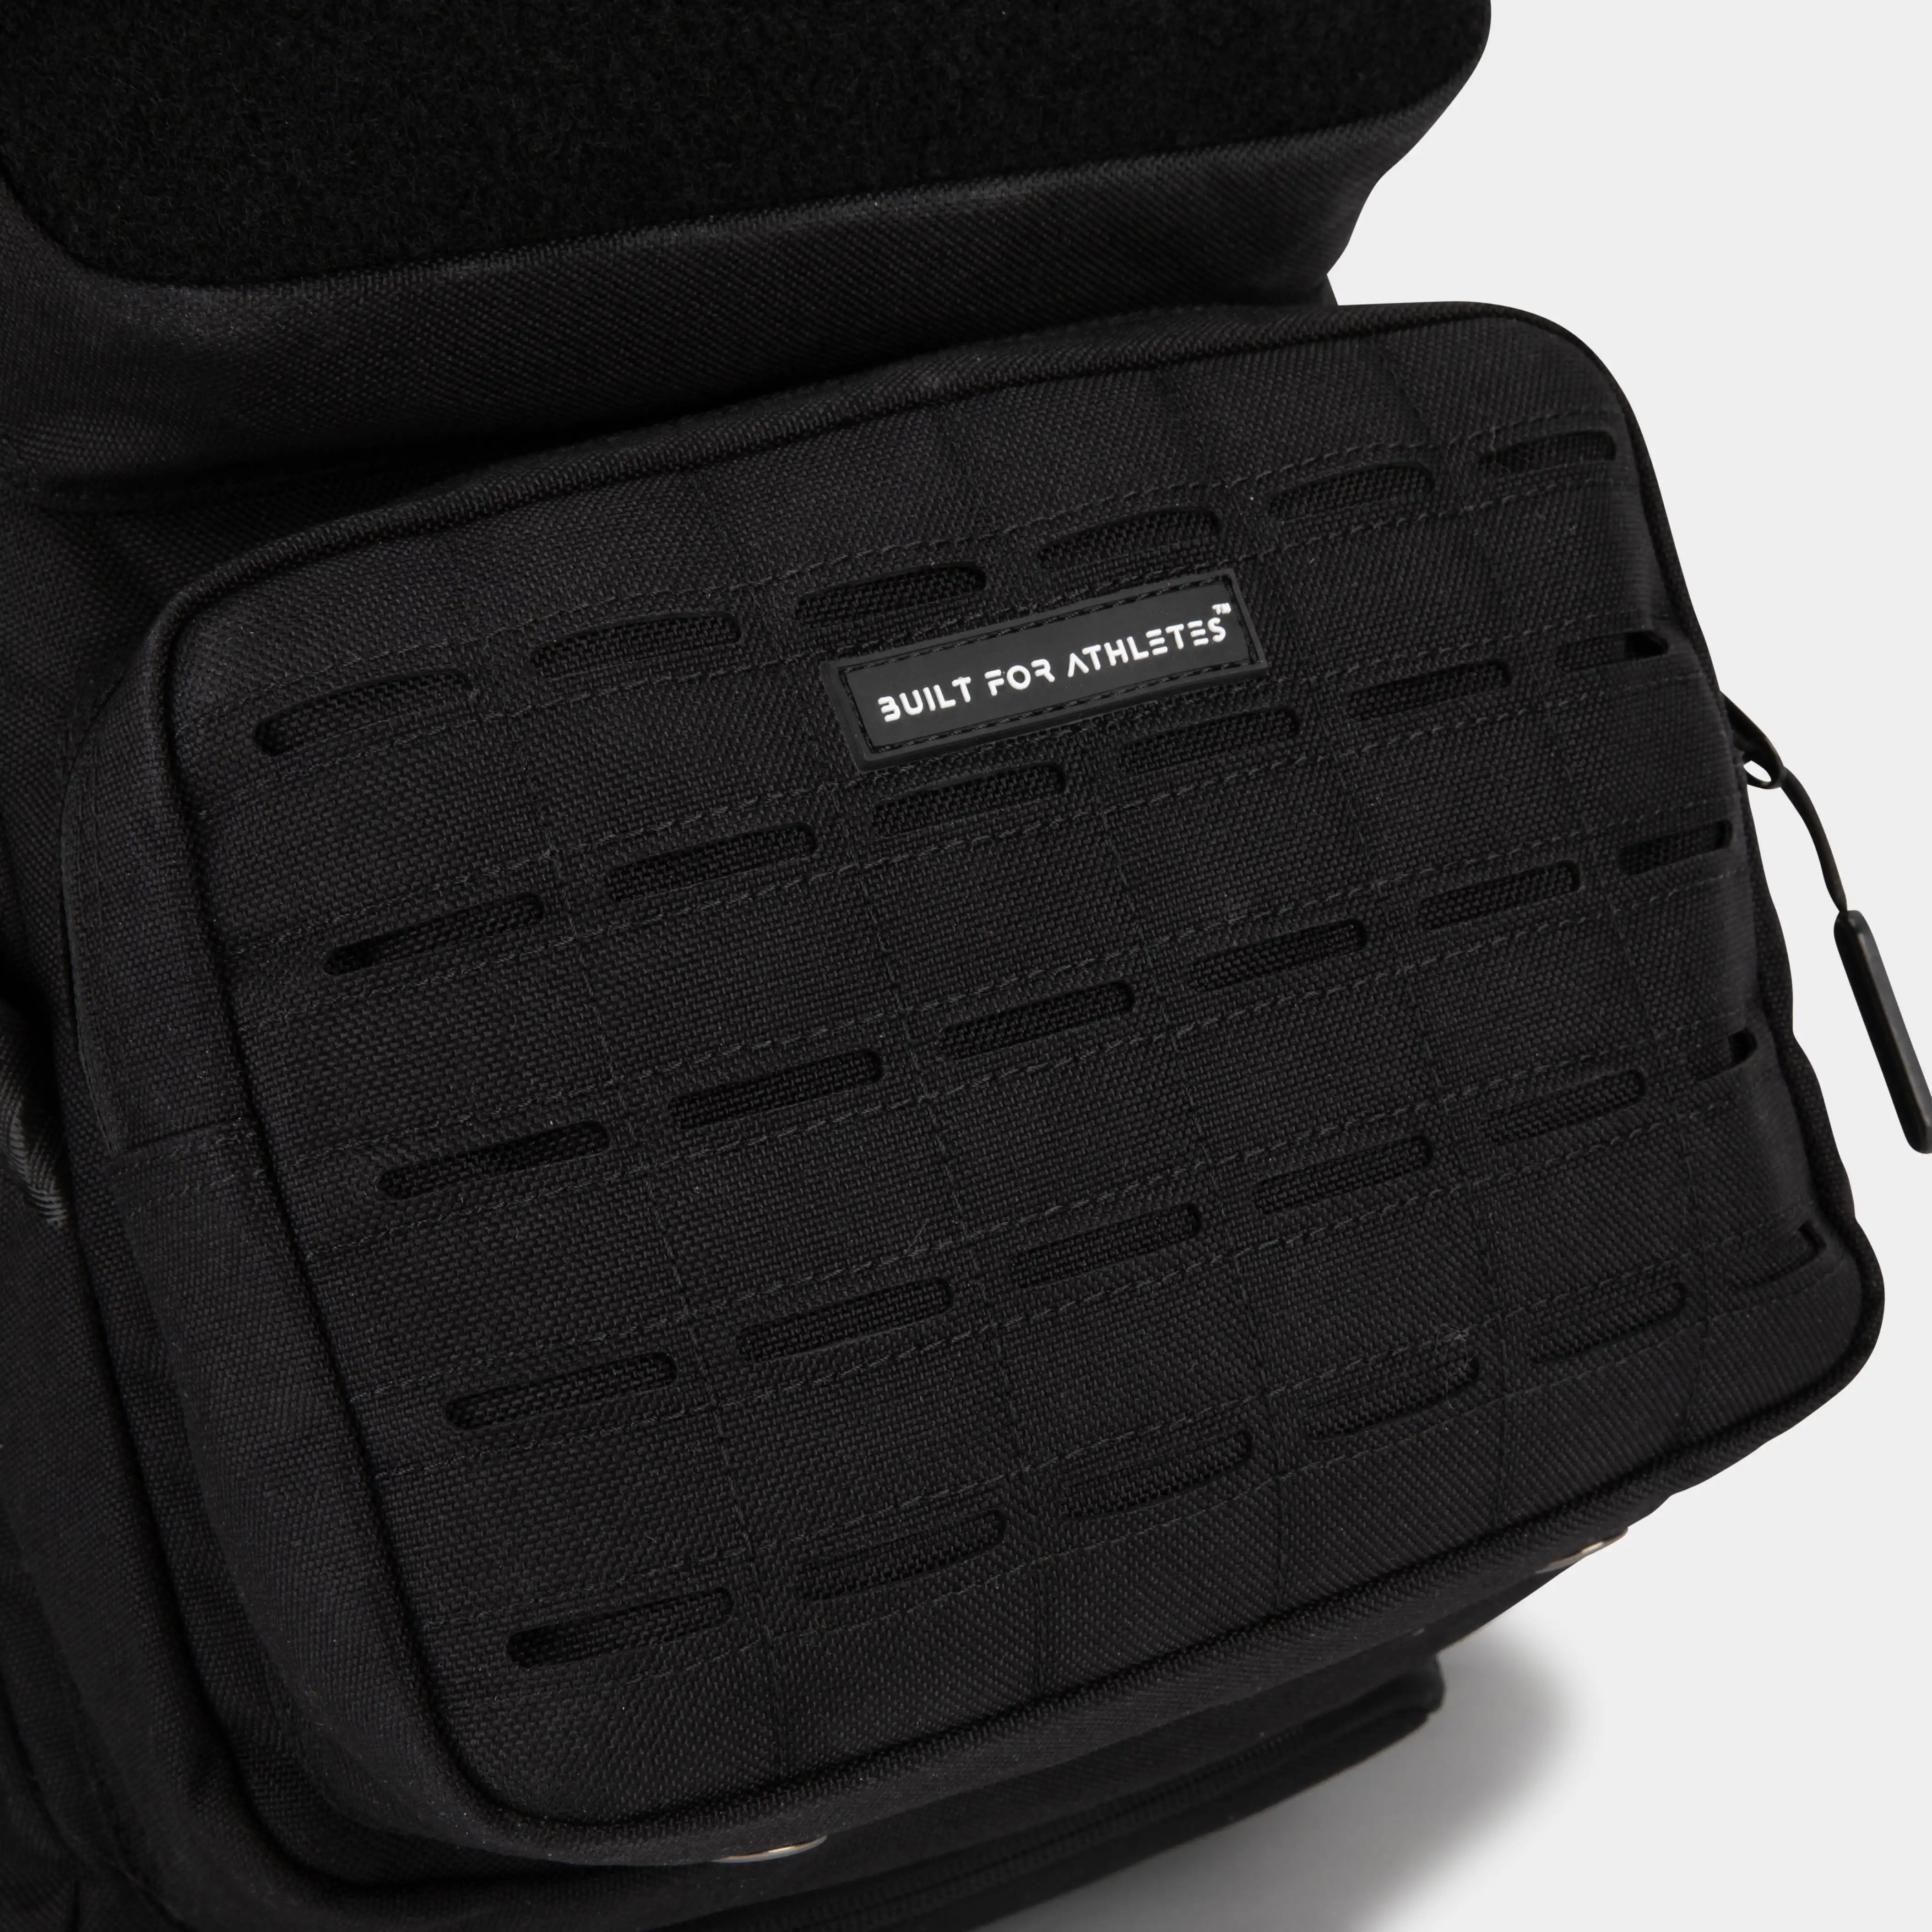 Built for Athletes™ Backpacks Pro Series 25L Gym Backpack